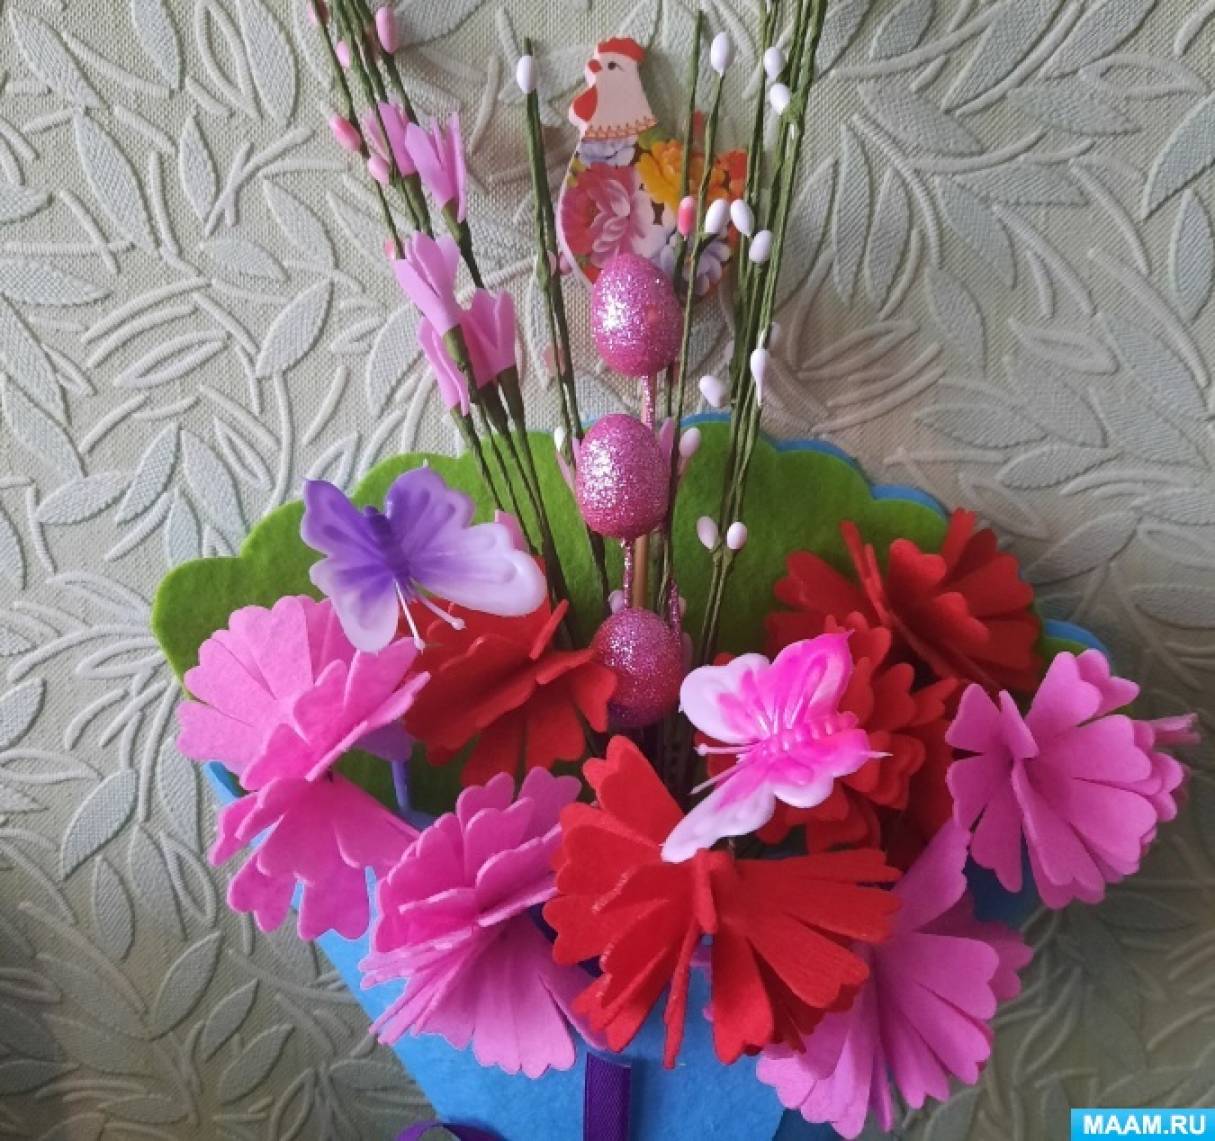 Цветы из фетра — удовольствие творить и дарить